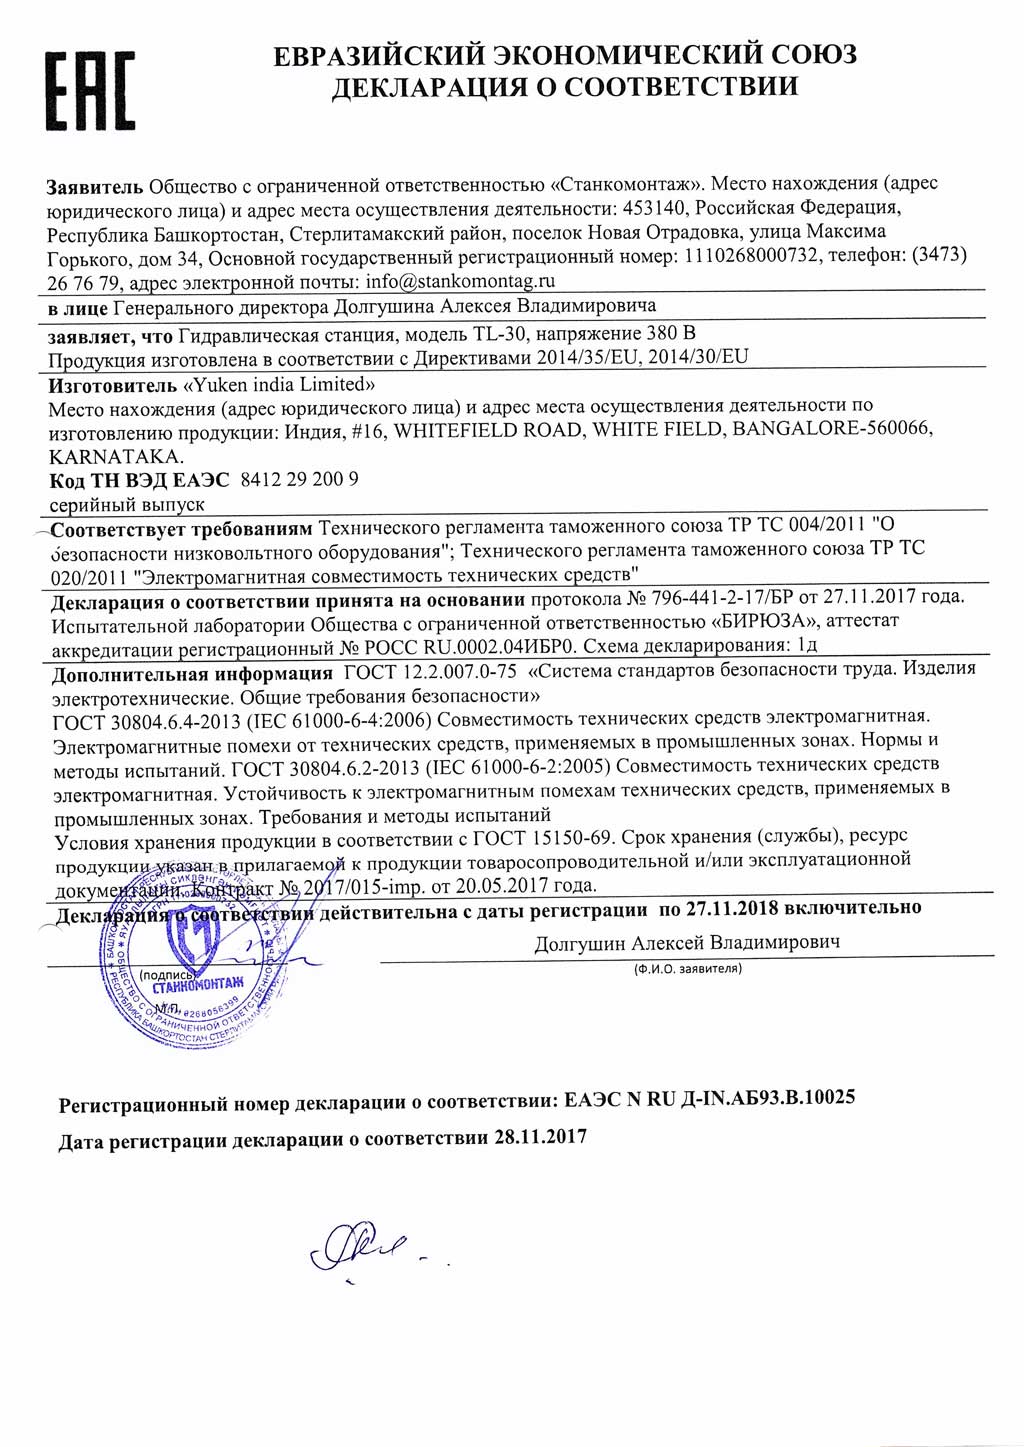 Сертификат на гидравлическую станцию мод. TL-30